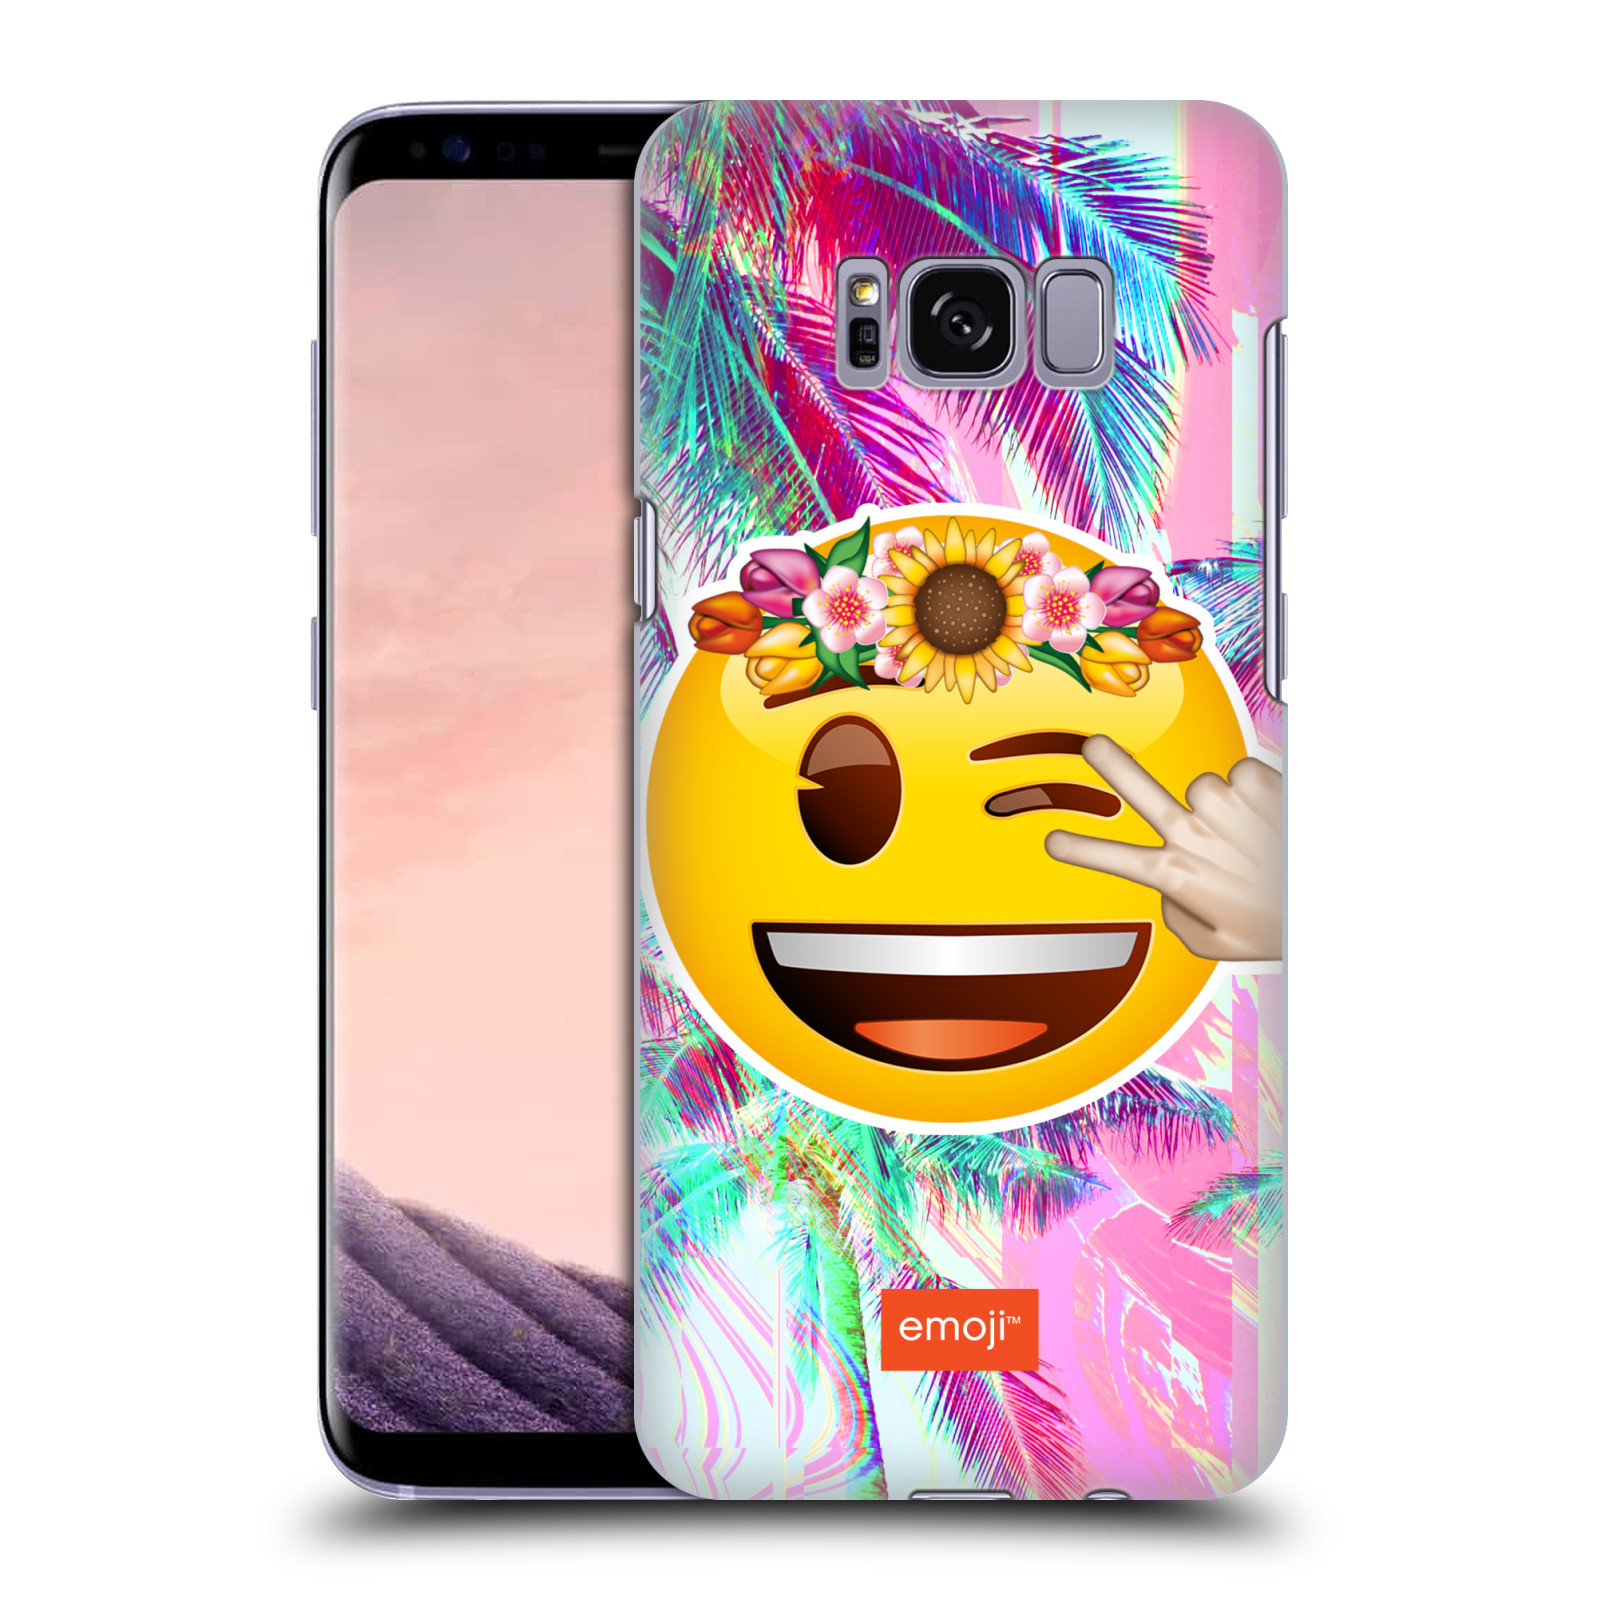 Pouzdro na mobil Samsung Galaxy S8 - HEAD CASE - Emoji smajlík palmy a květiny